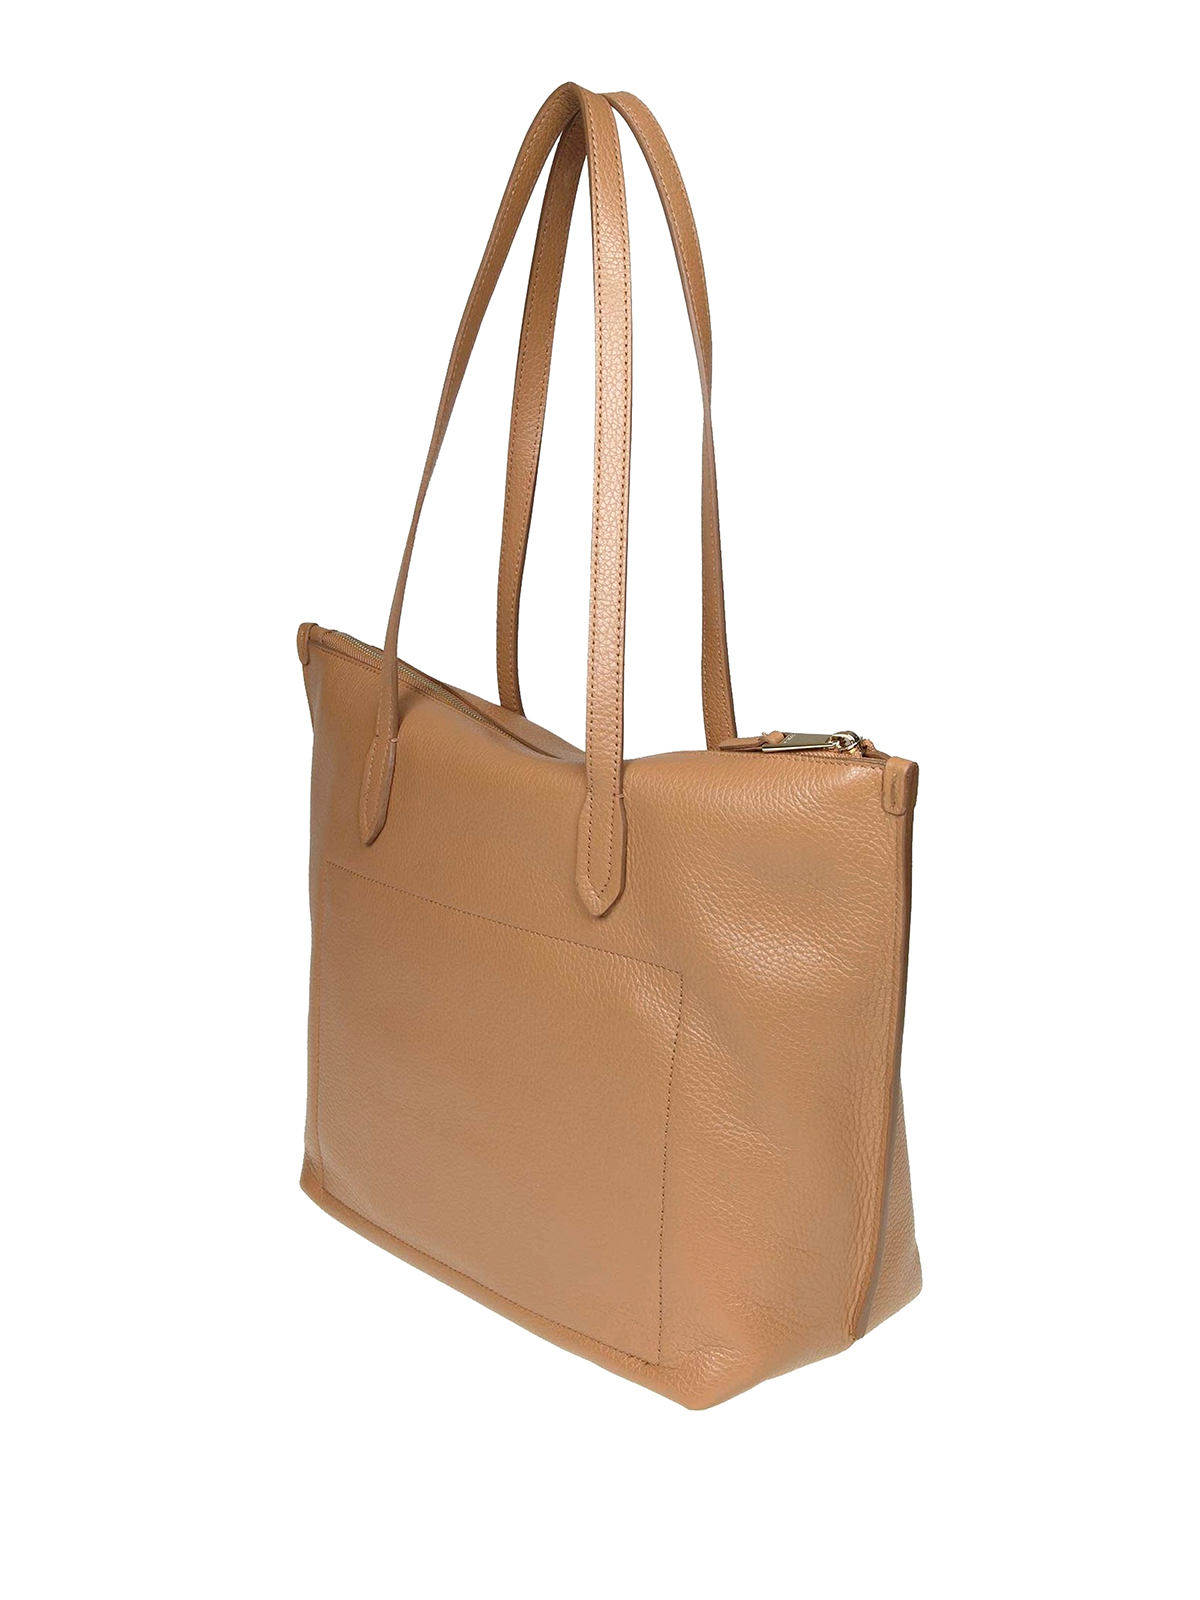 Totes bags Furla - Luce medium tote - 1023584 | Shop online at iKRIX